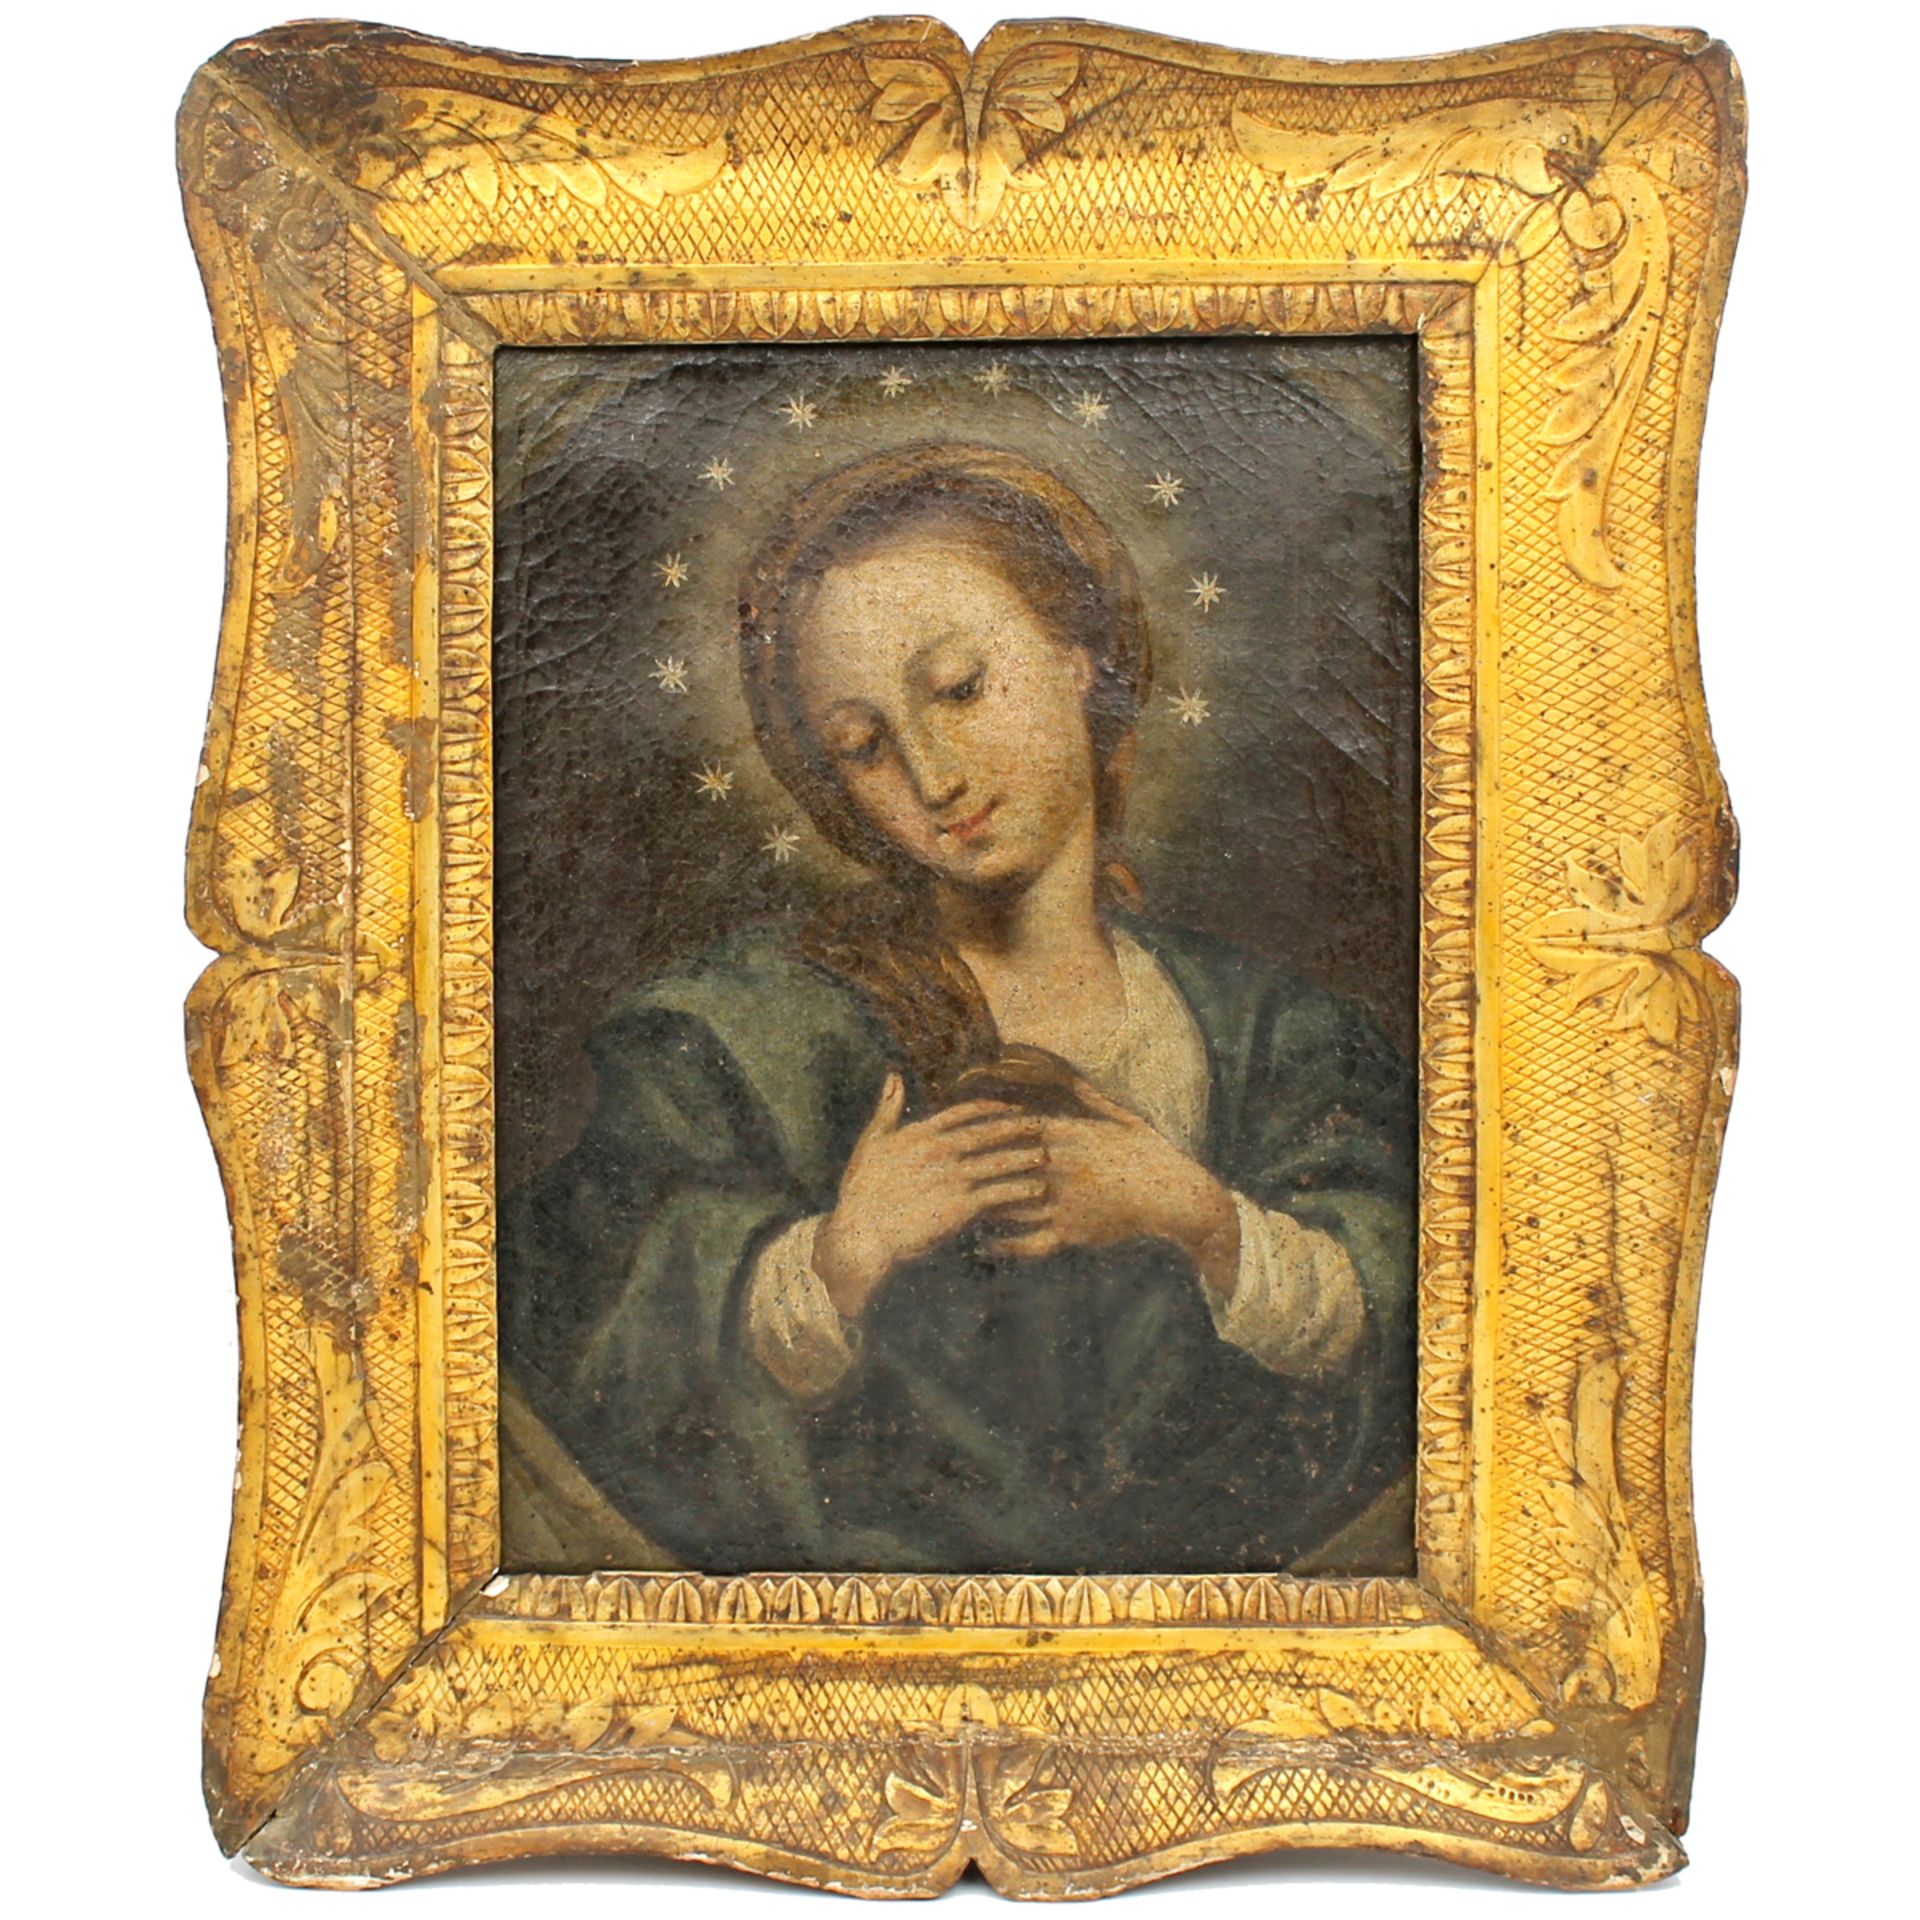 SCUOLA SICILIANA DEL SECOLO XVIII "La Madonna" - SICILIAN SCHOOL OF THE XVIII CENTURY "La Madonna"